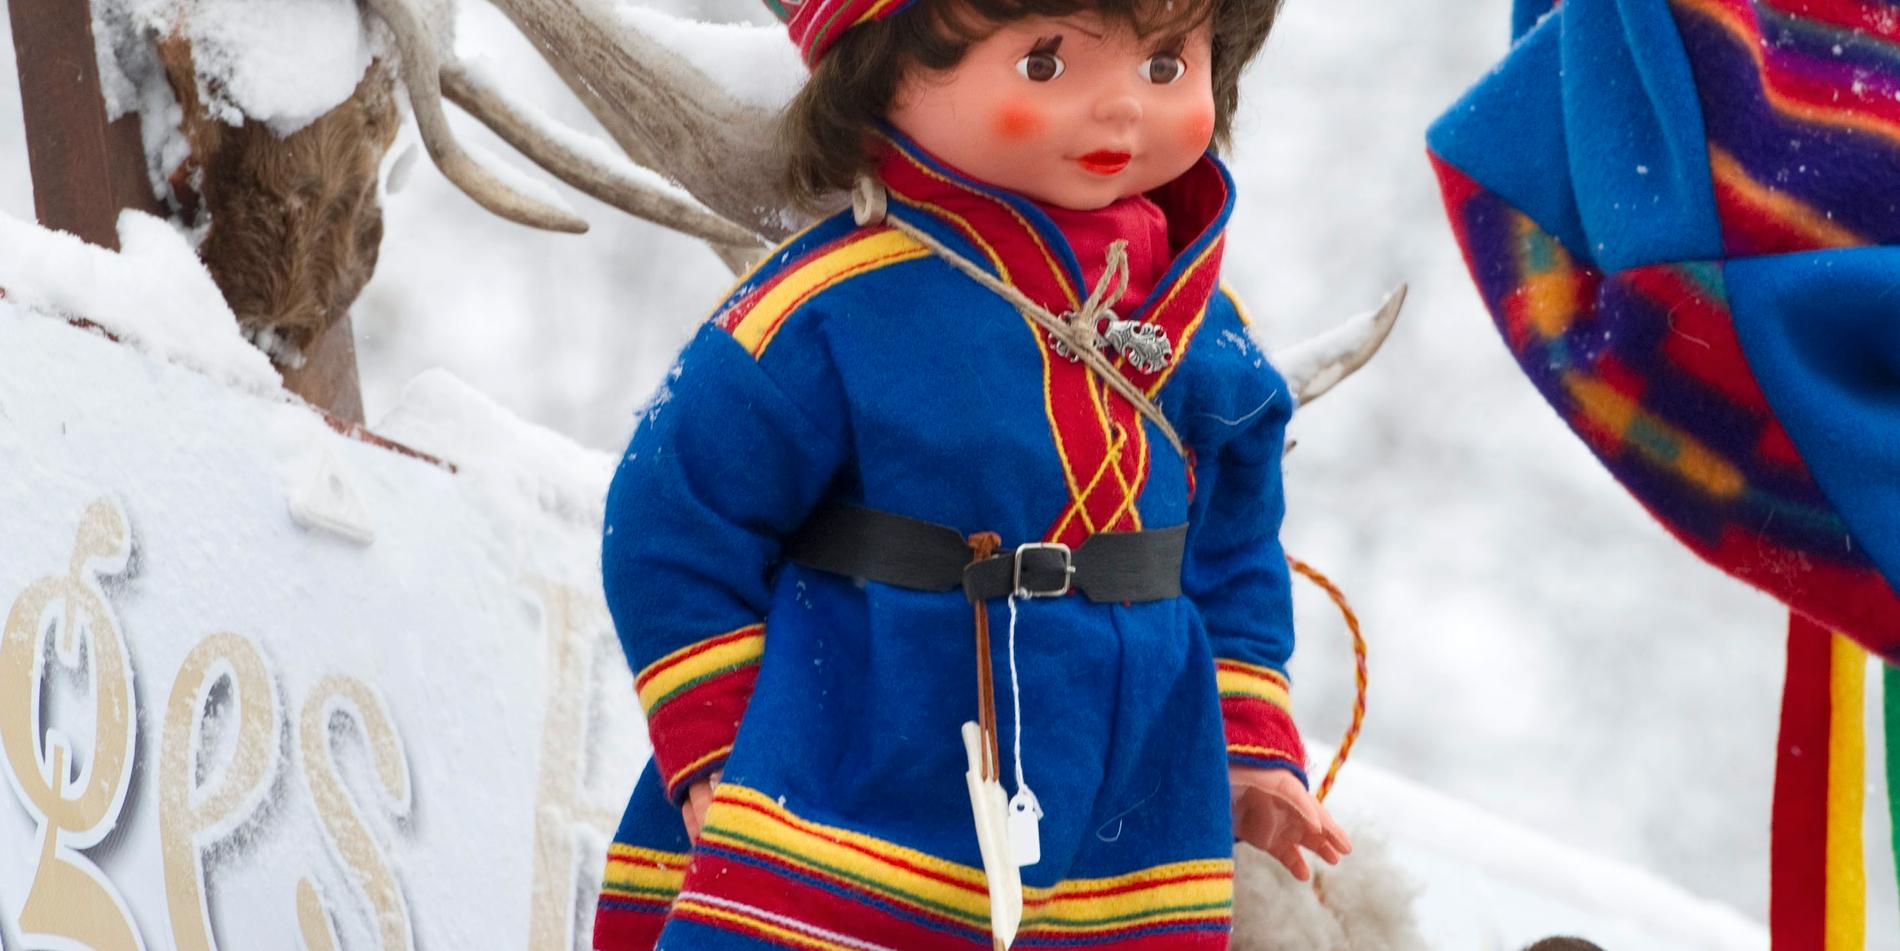 Fejkade samiska kläder plockas bort från hemsida efter kritik. Bilden är en arkivbild och har ingenting med företaget att göra. 